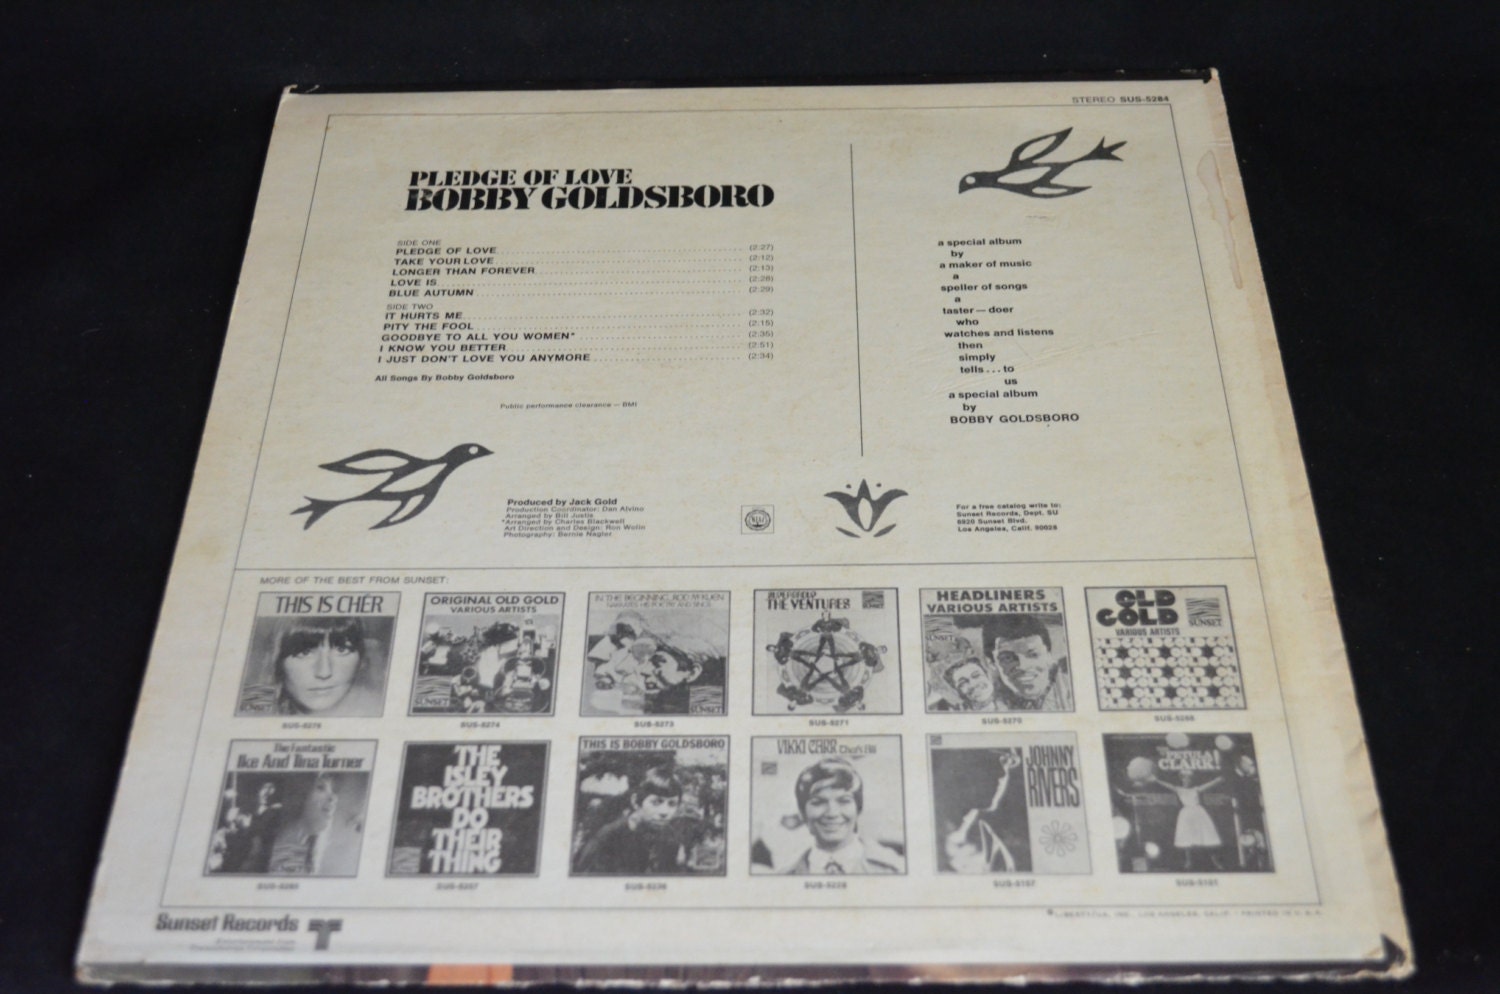 Vintage Vinyl Record Bobby Goldsboro: Pledge of Love Album | Etsy